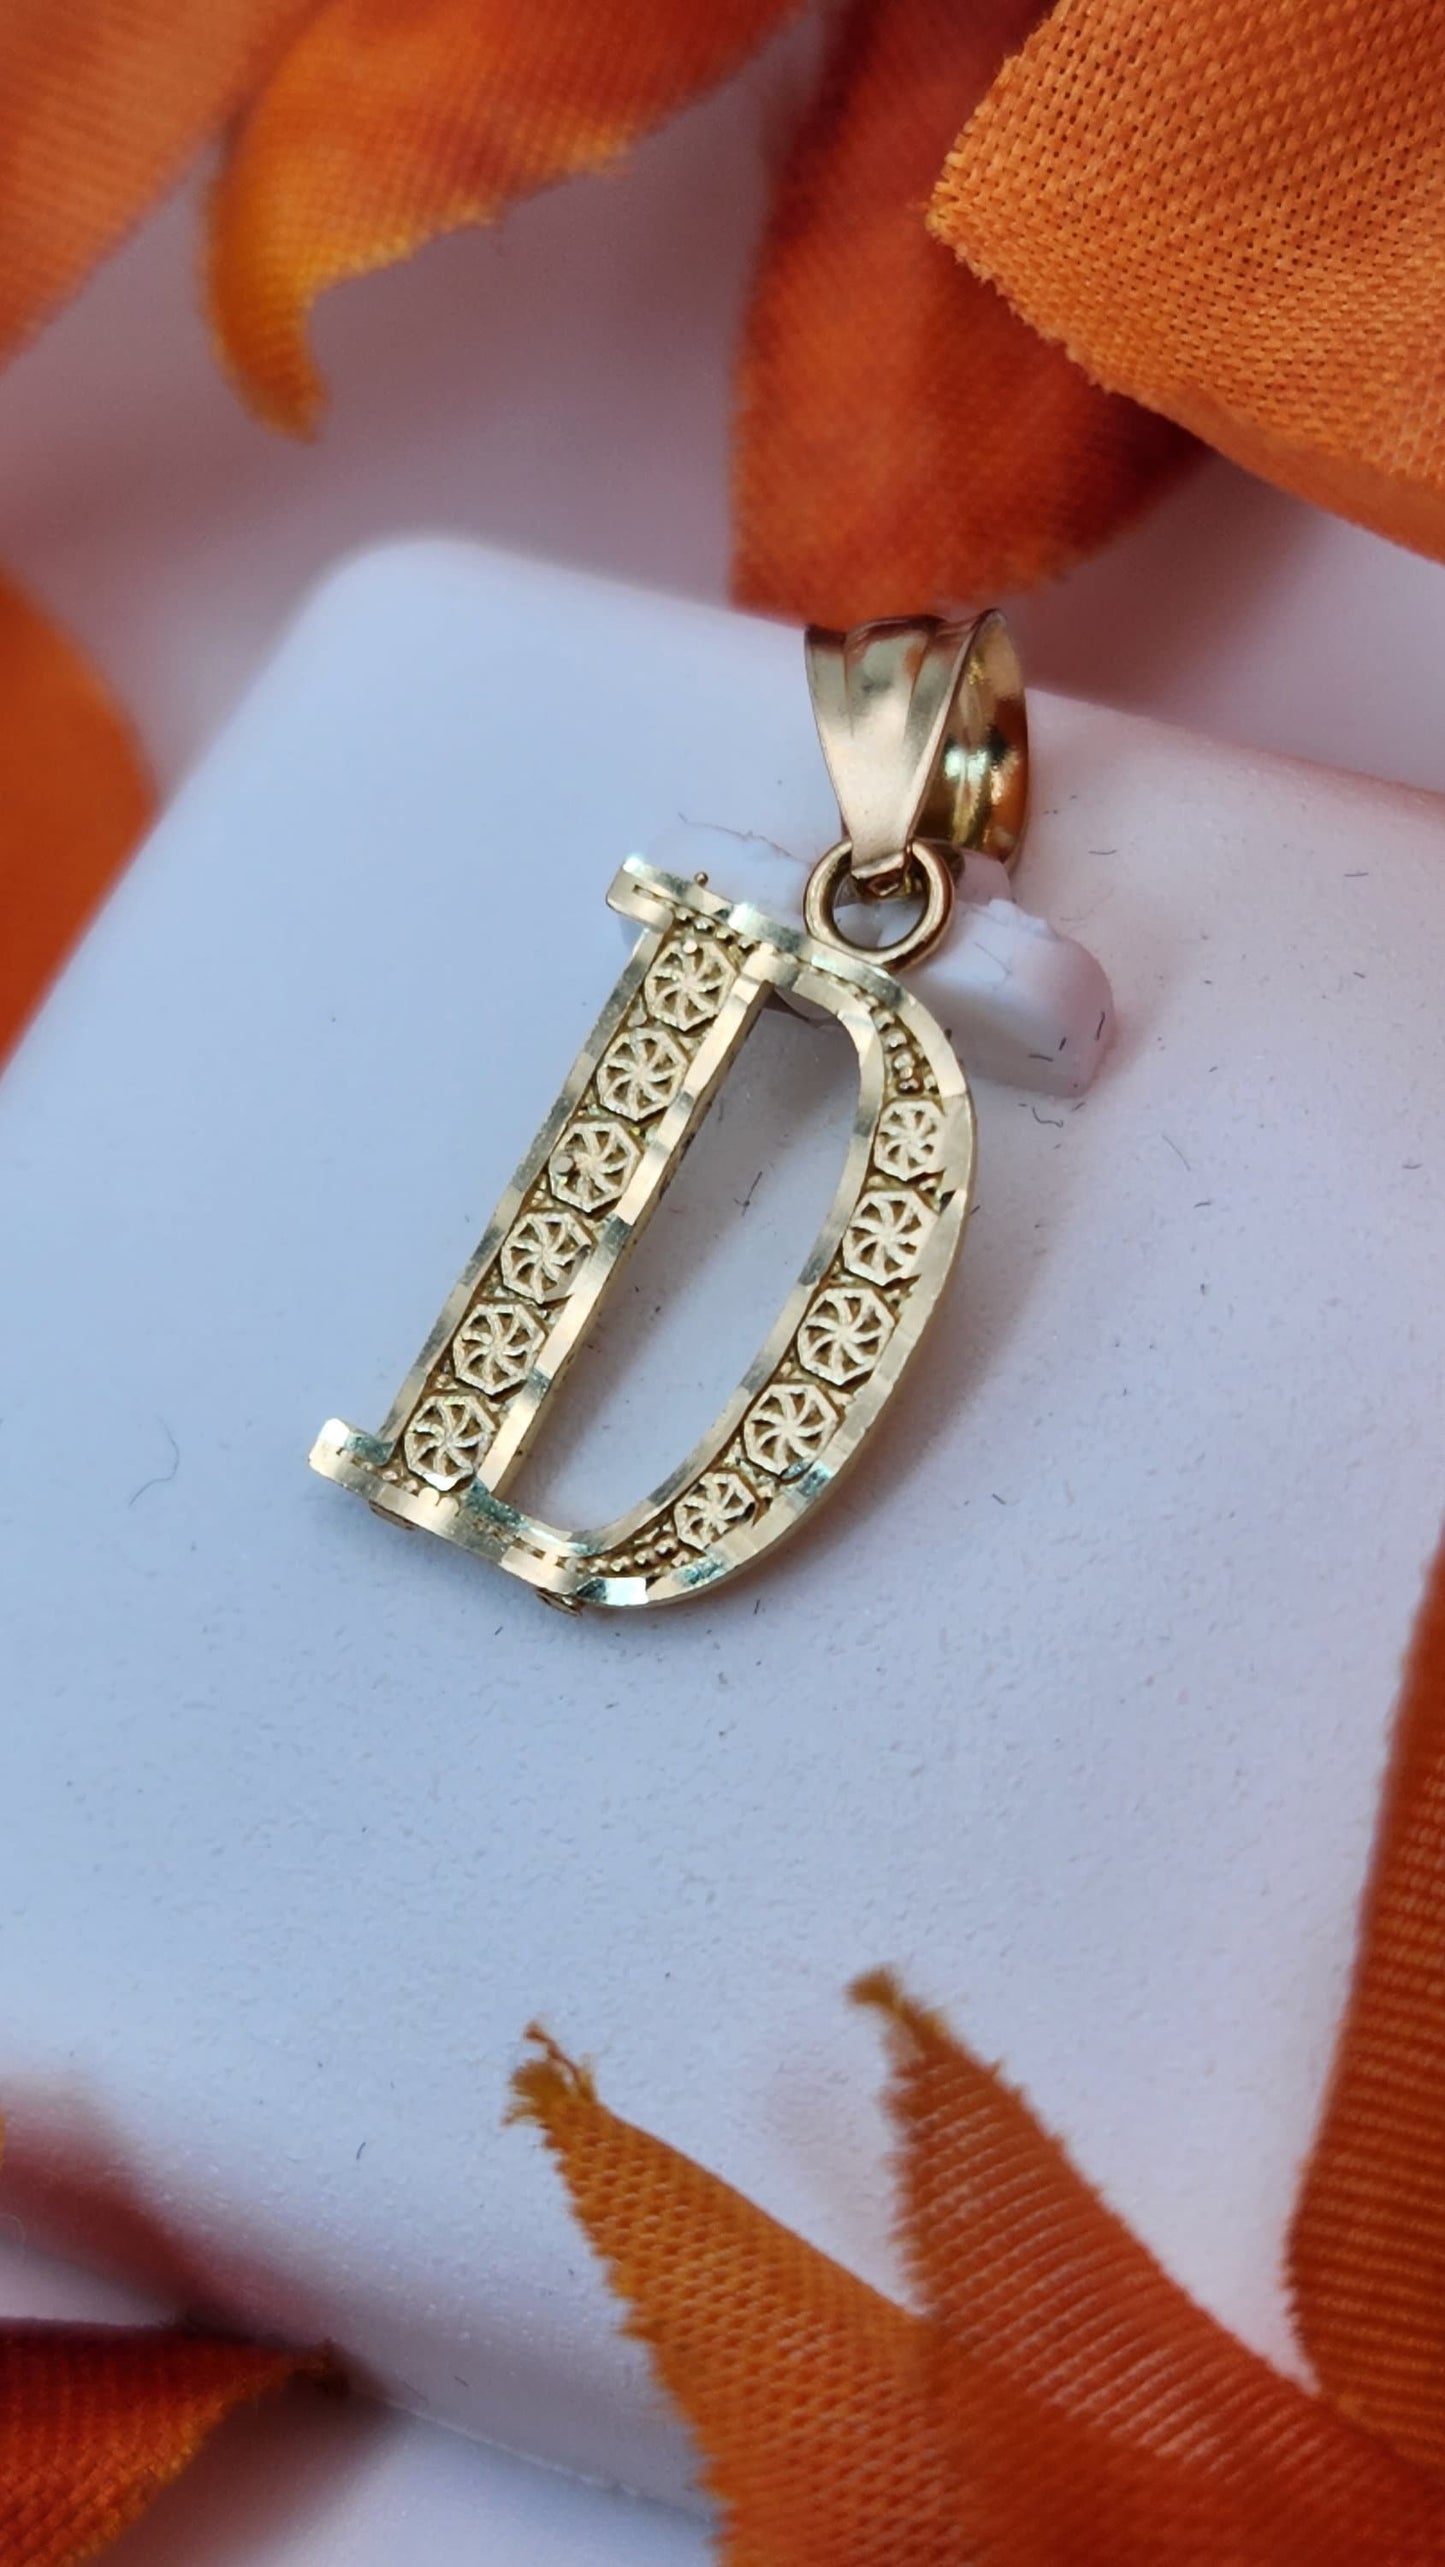 10K Gold letter "D" pendant